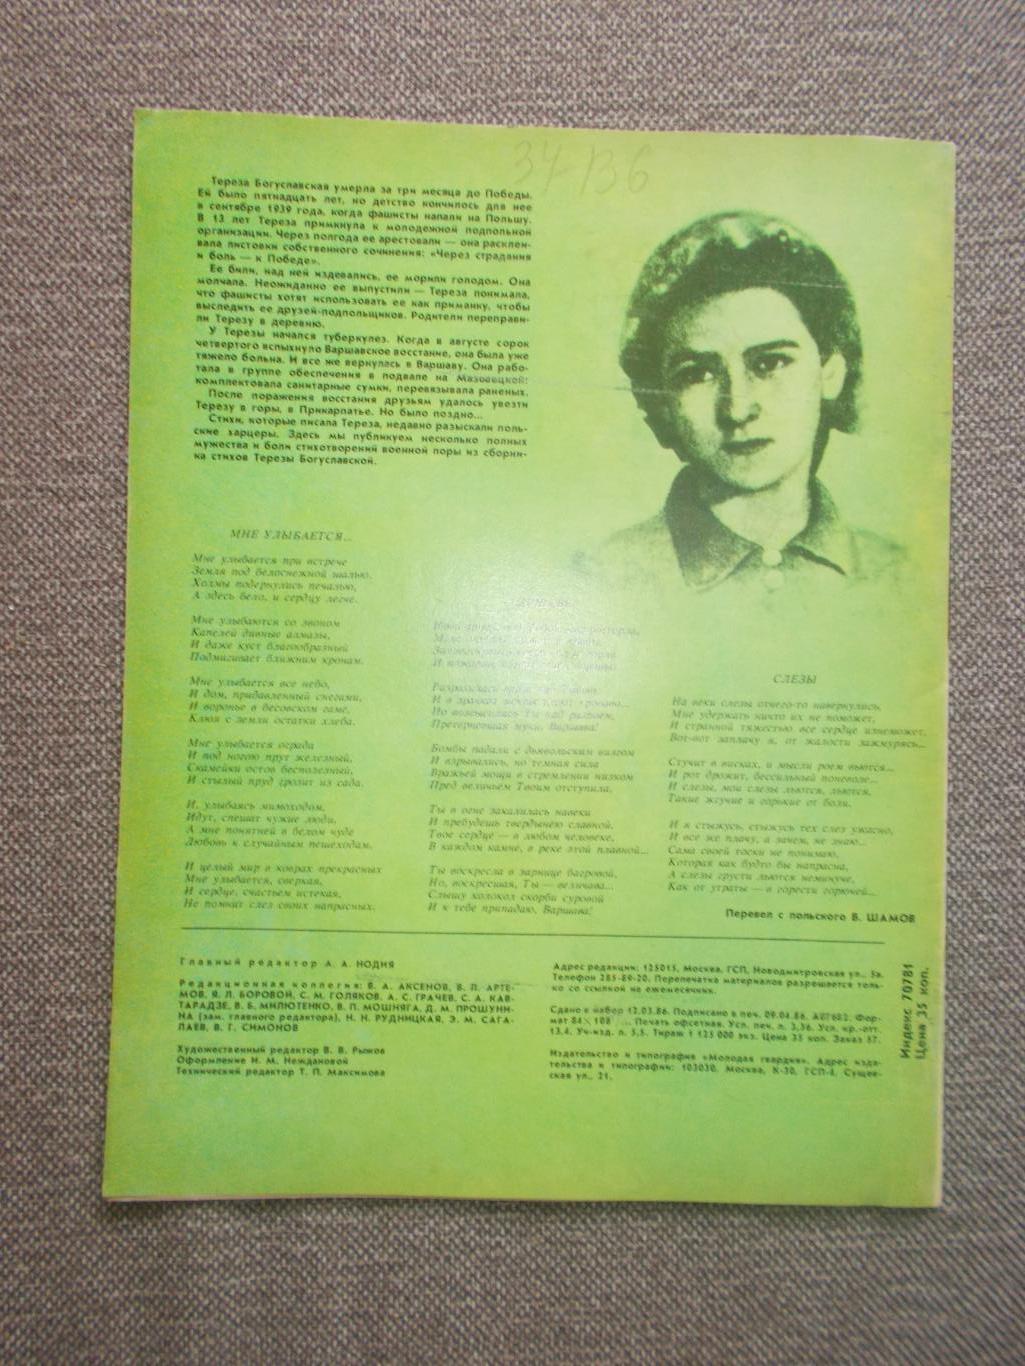 Журнал СССР :Ровесник№ 5 (май) 1986 г. (Молодежный музыкальный журнал) 1